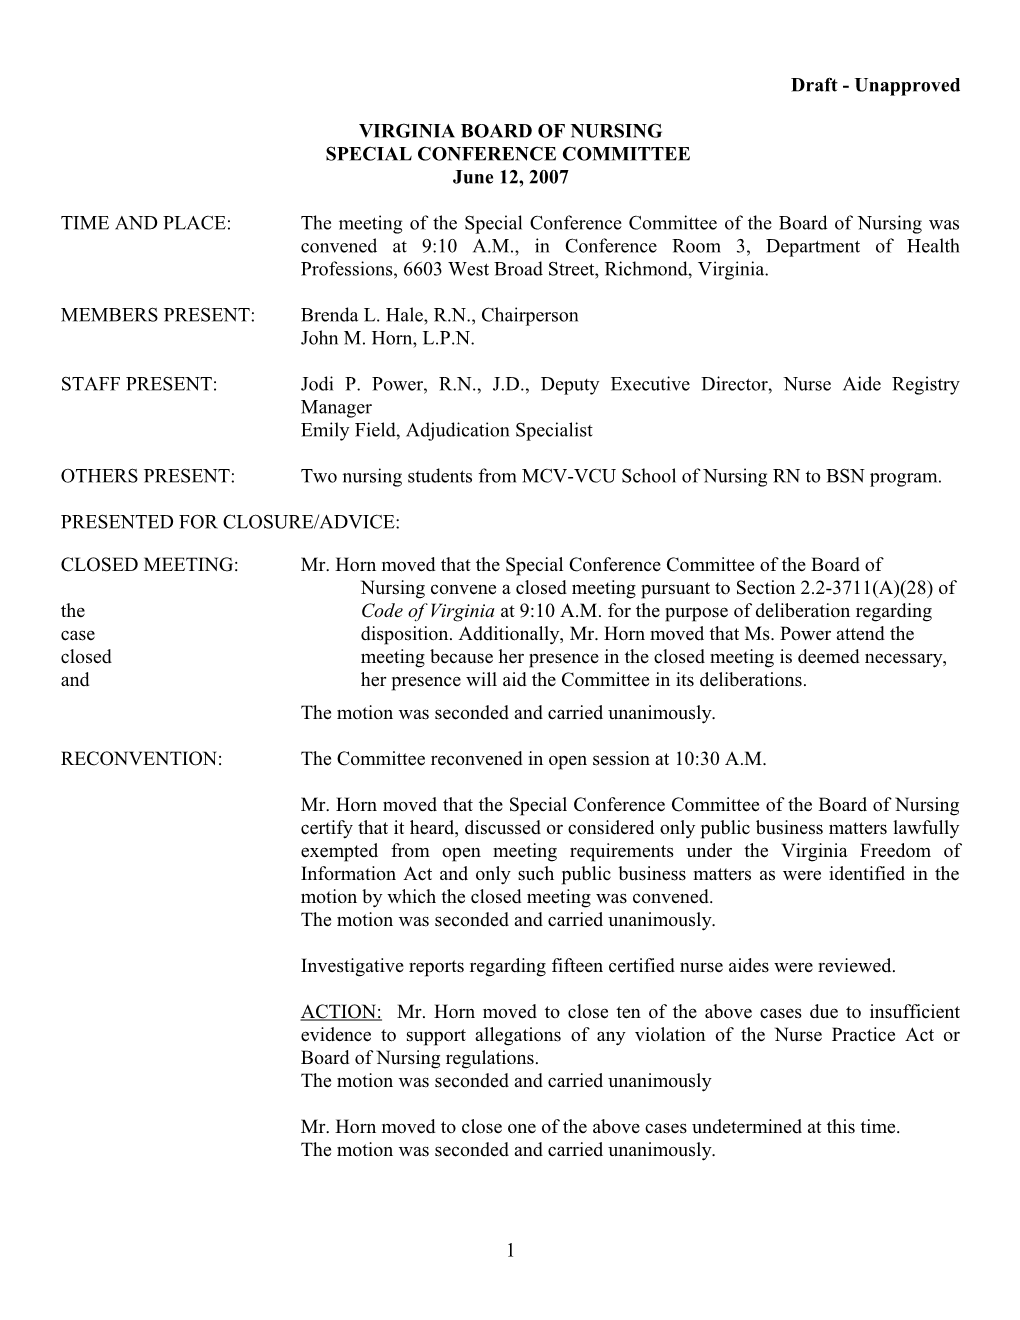 Nursing-Draft Minutes of IFC Held June 12, 2007